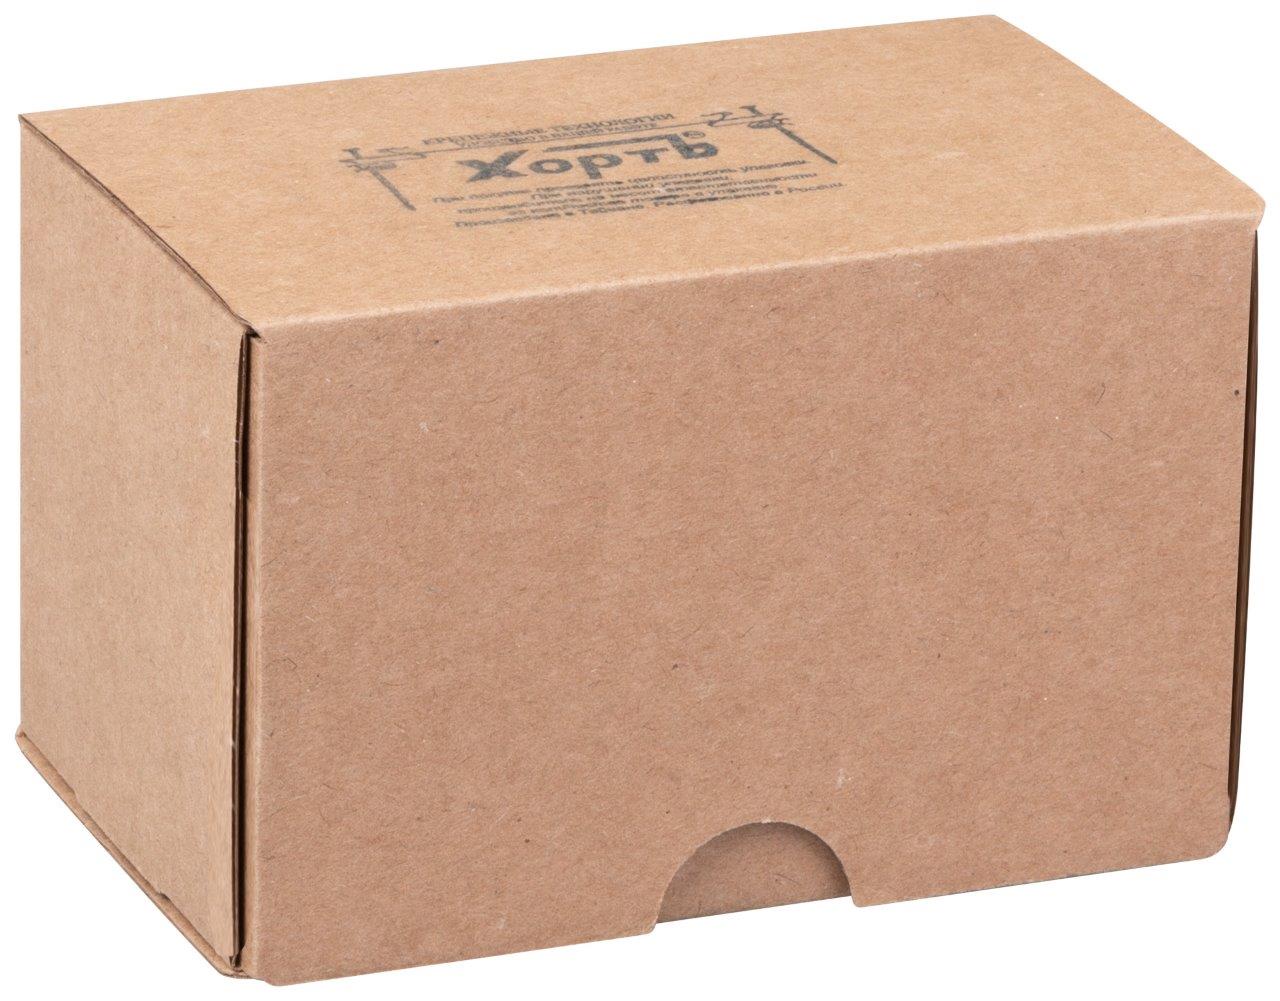 КАТЕГОРИЯ "7" (средняя фасовка в картонные коробки по 1000 штук.(или 1 кг))